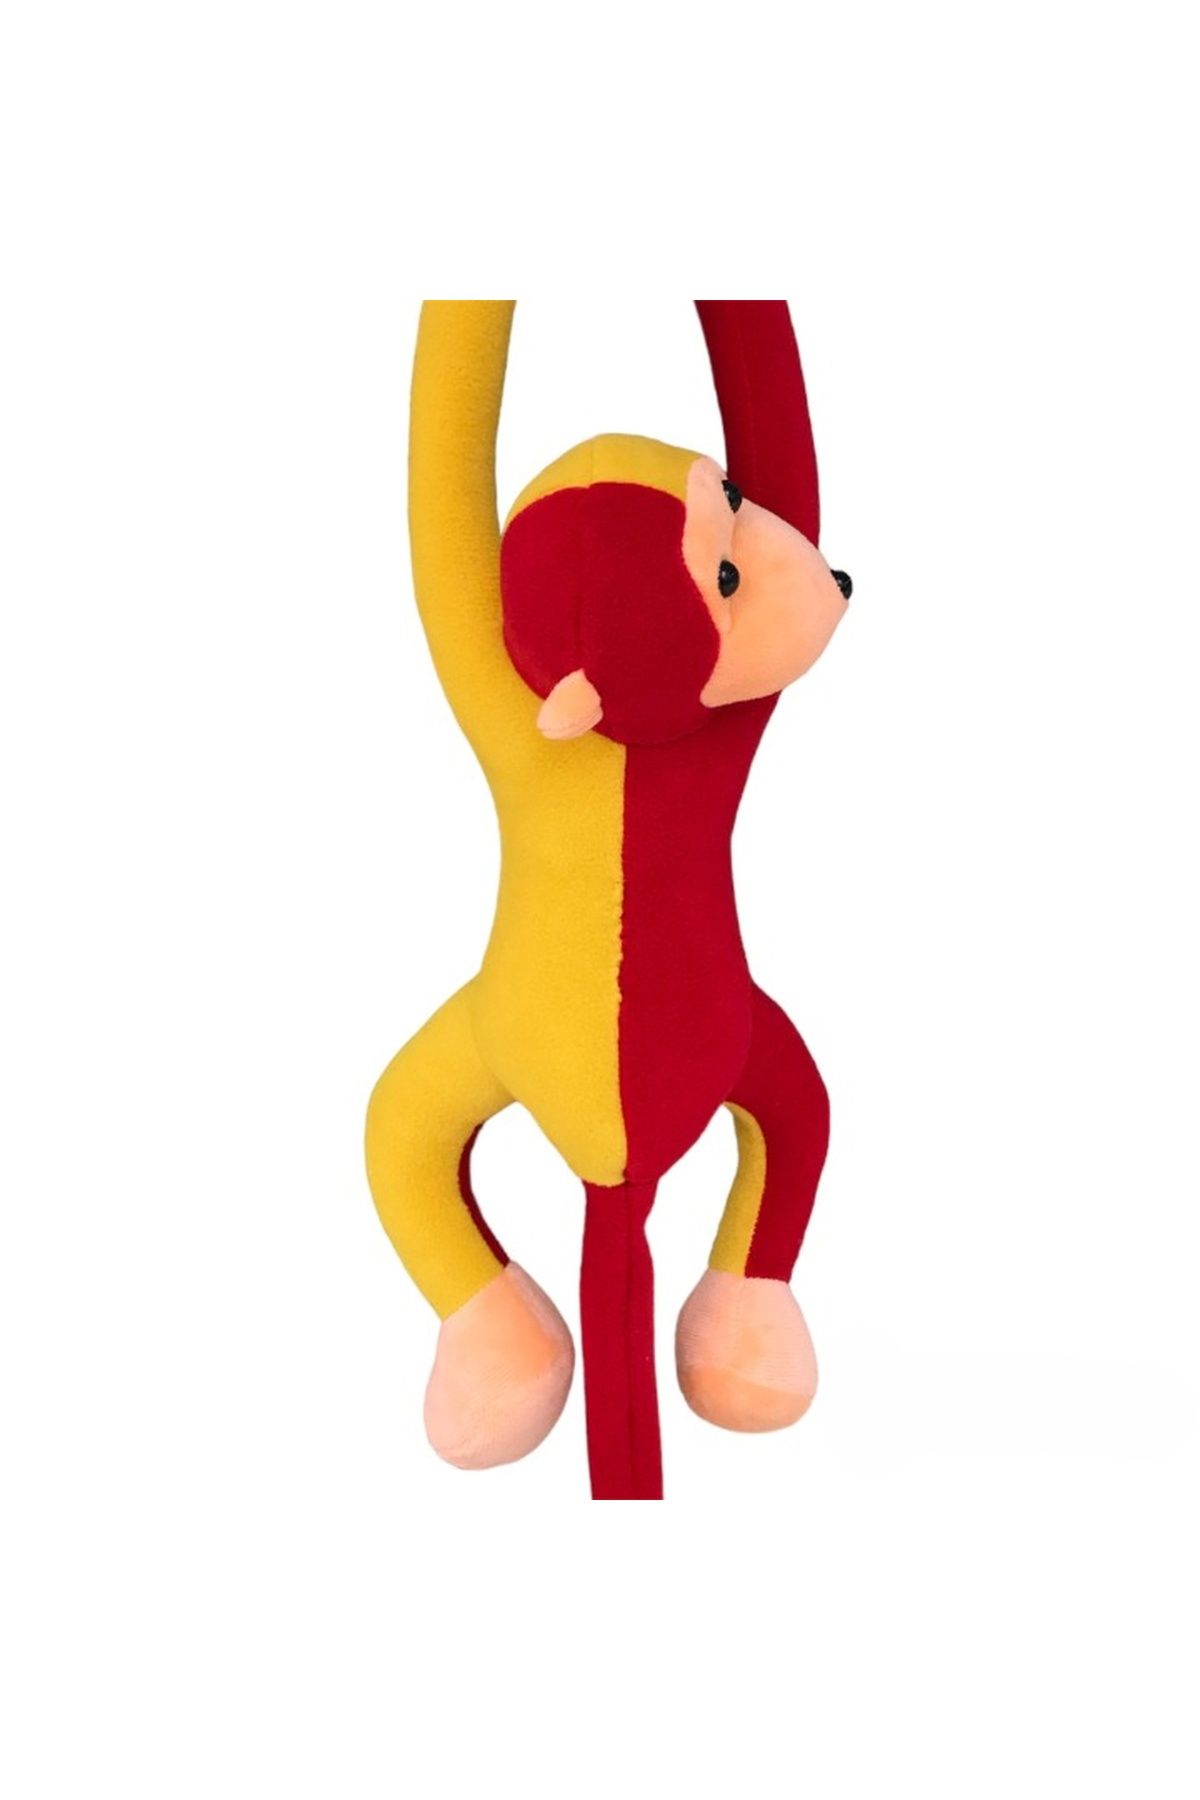 UgurToyss Fanatik Taraftar Peluş Oyuncak Maymun,Elleri Yapışabilen Sevimli,Hediyelik Maymun Oyuncak 70 cm